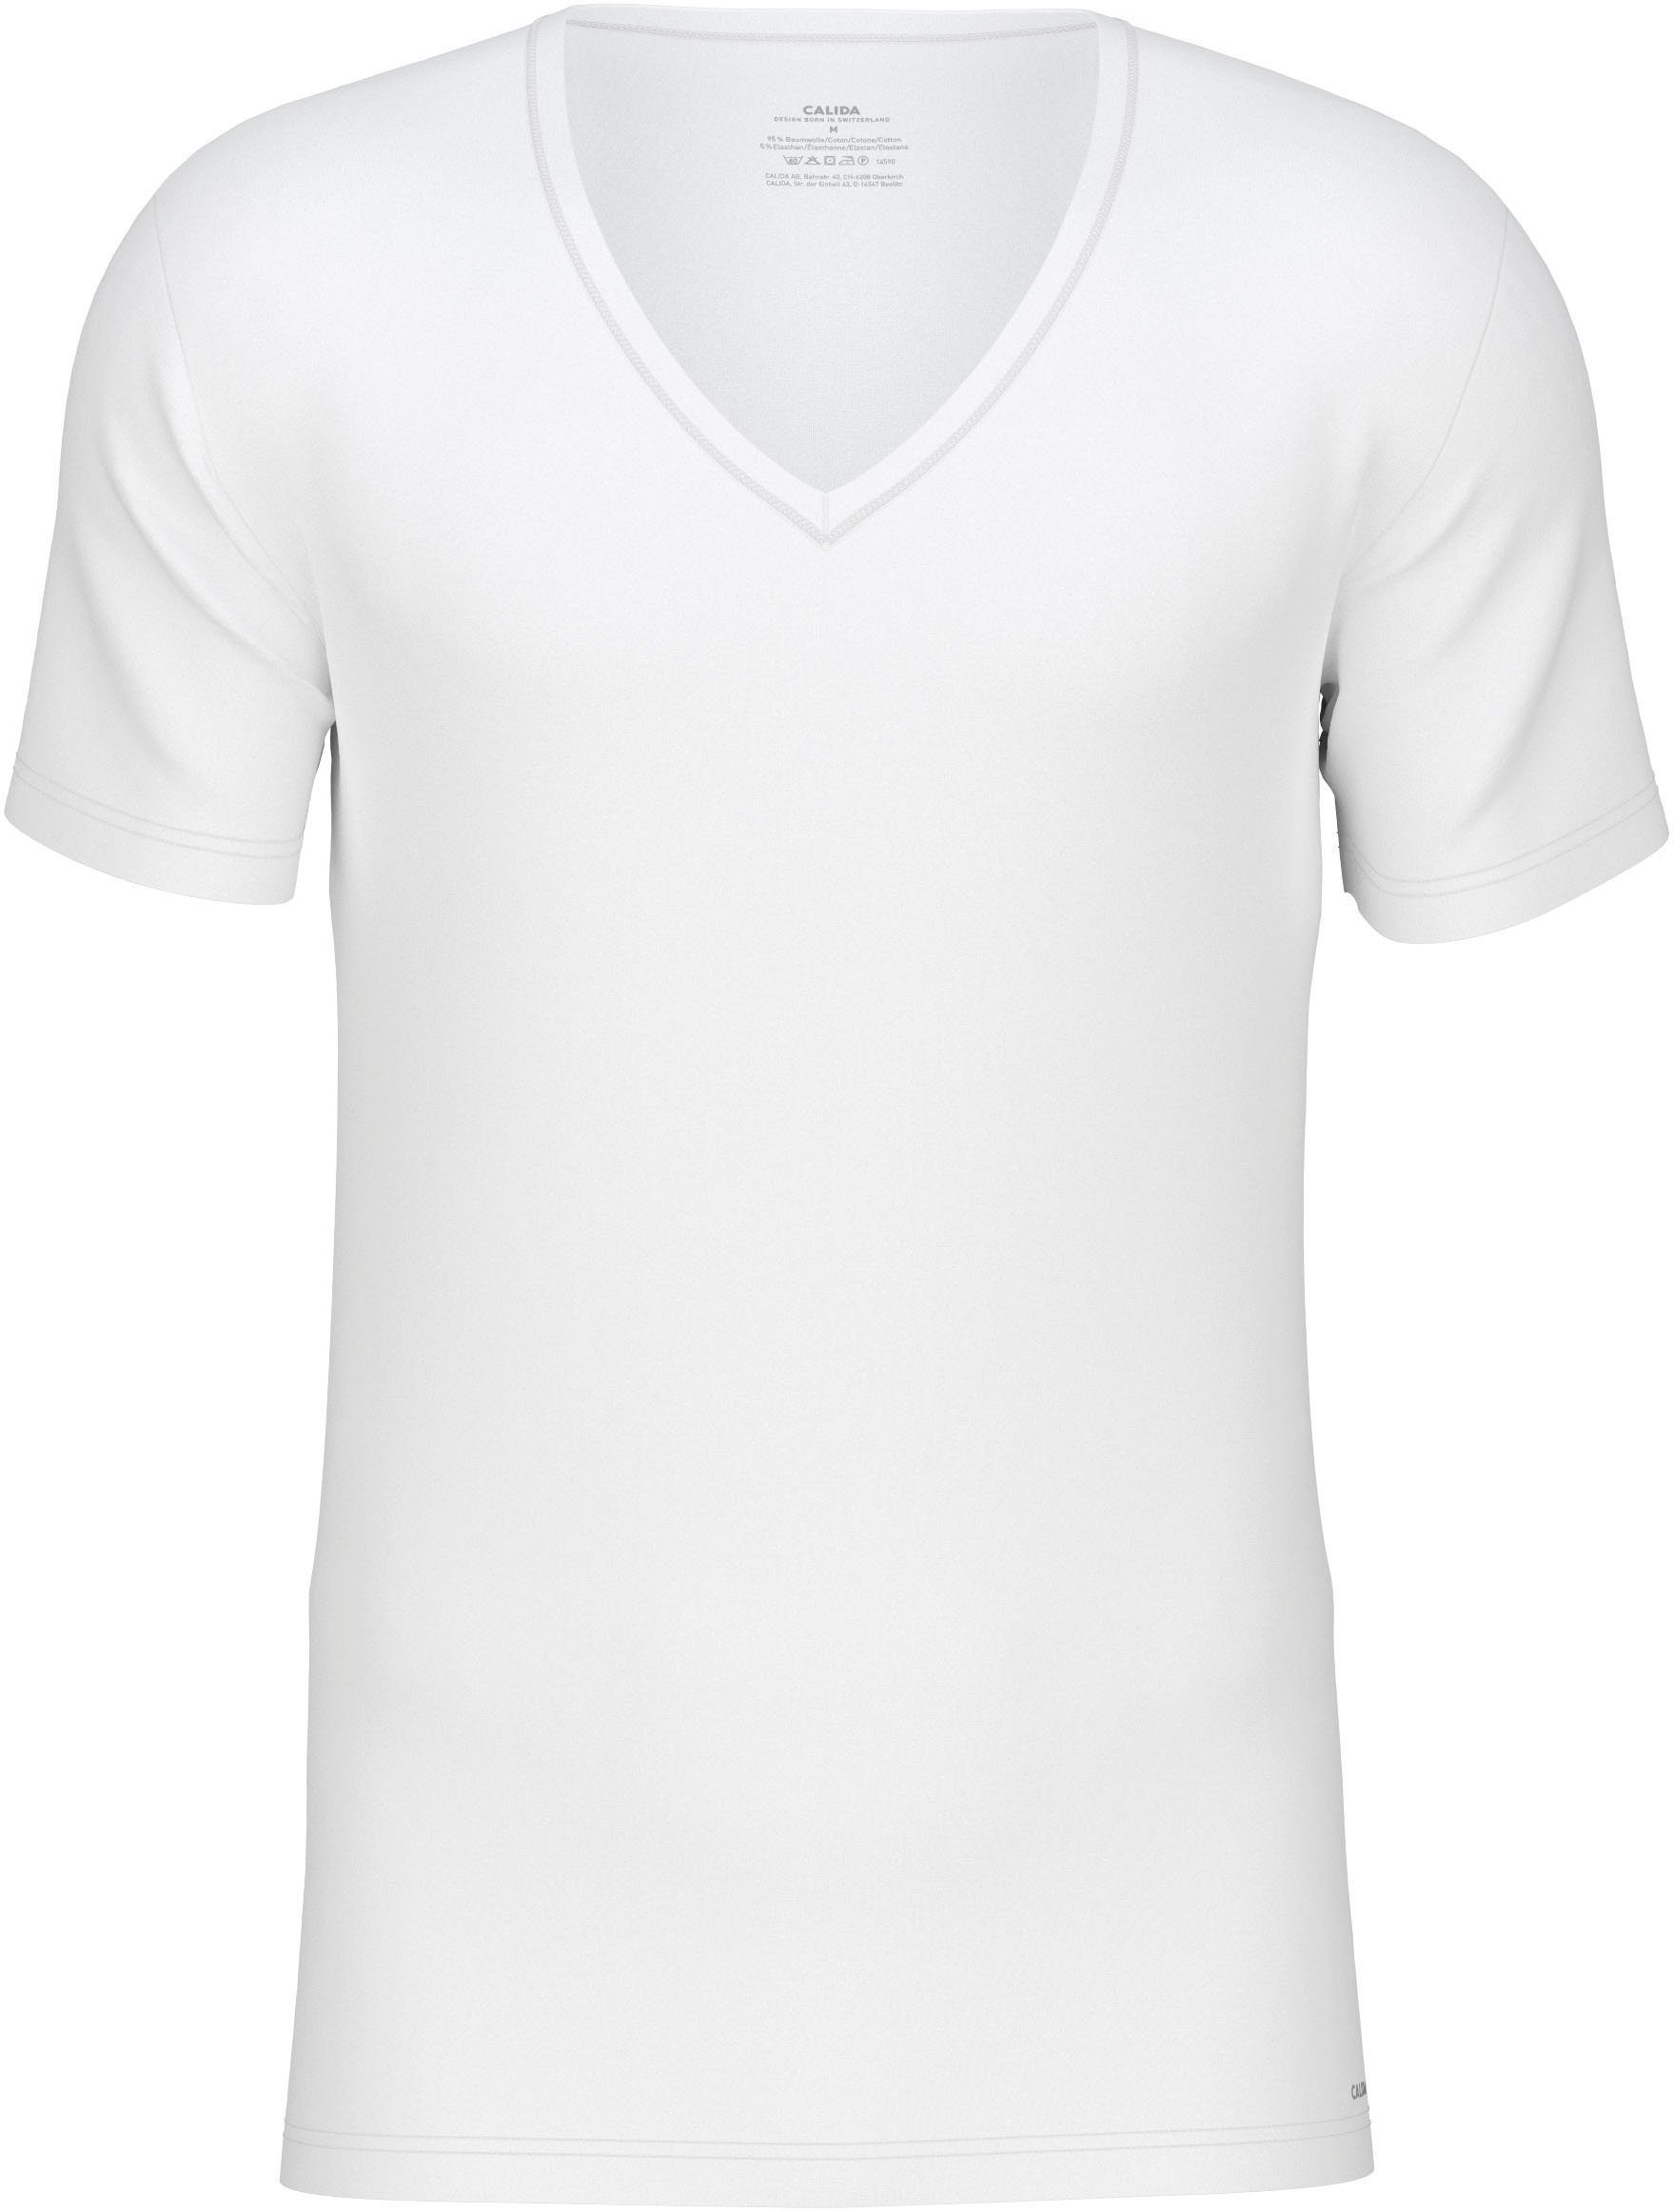 CALIDA T-Shirt Cotton Code und weiss perfekter V-Ausschnitt mit Passform